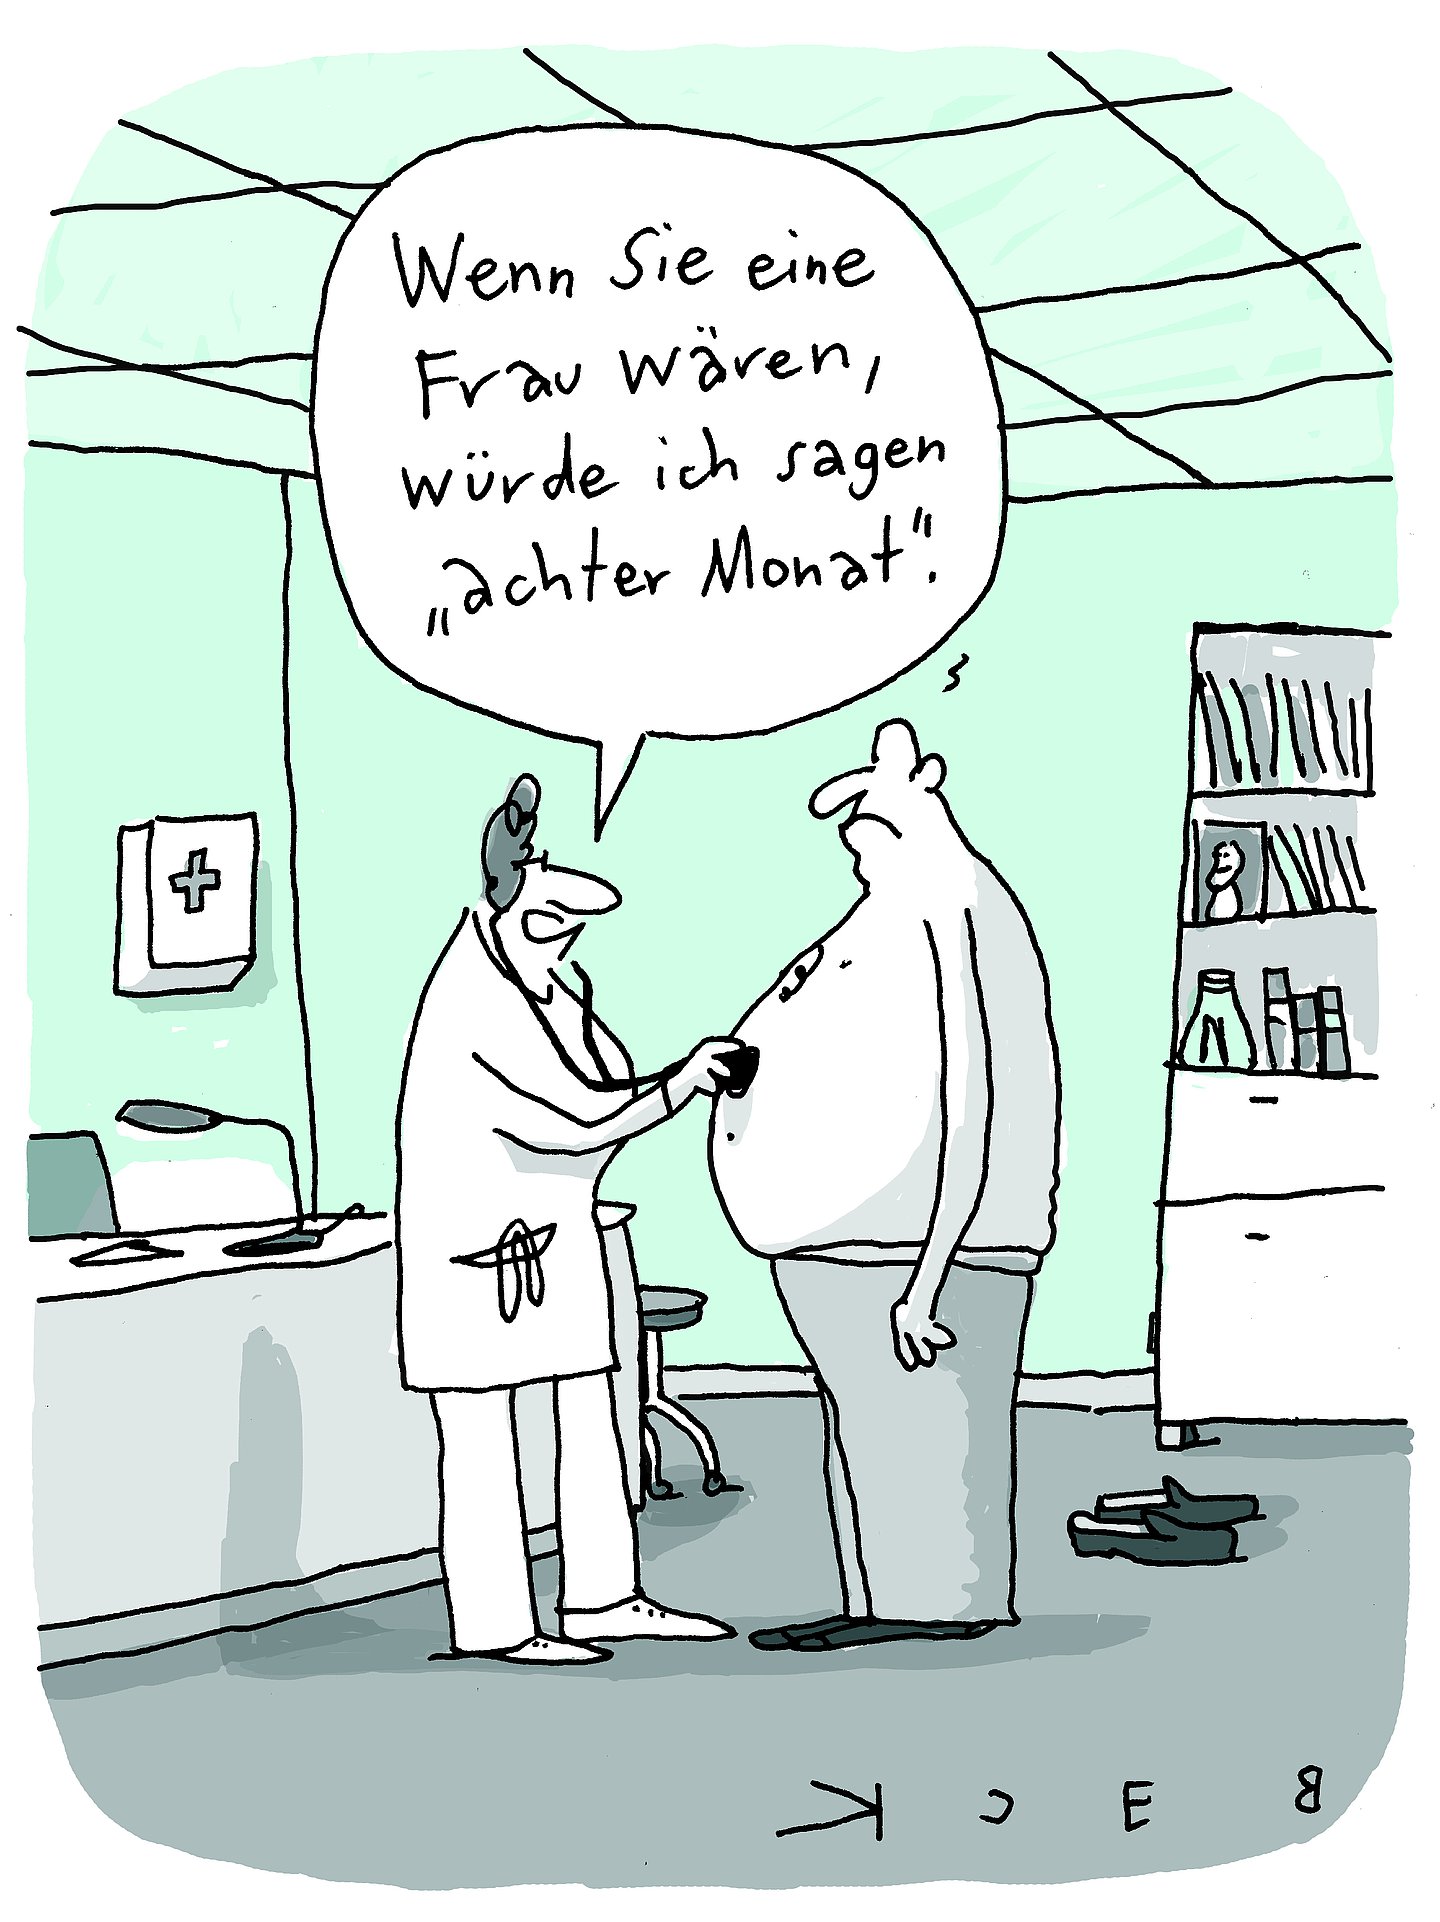 Cartoon von Beck: Ärztin, die den dicken Bauch einen Mannes abhört und sagt: "Wenn Sie eine Frau wären, würde ich sagen ,achter Monat'".